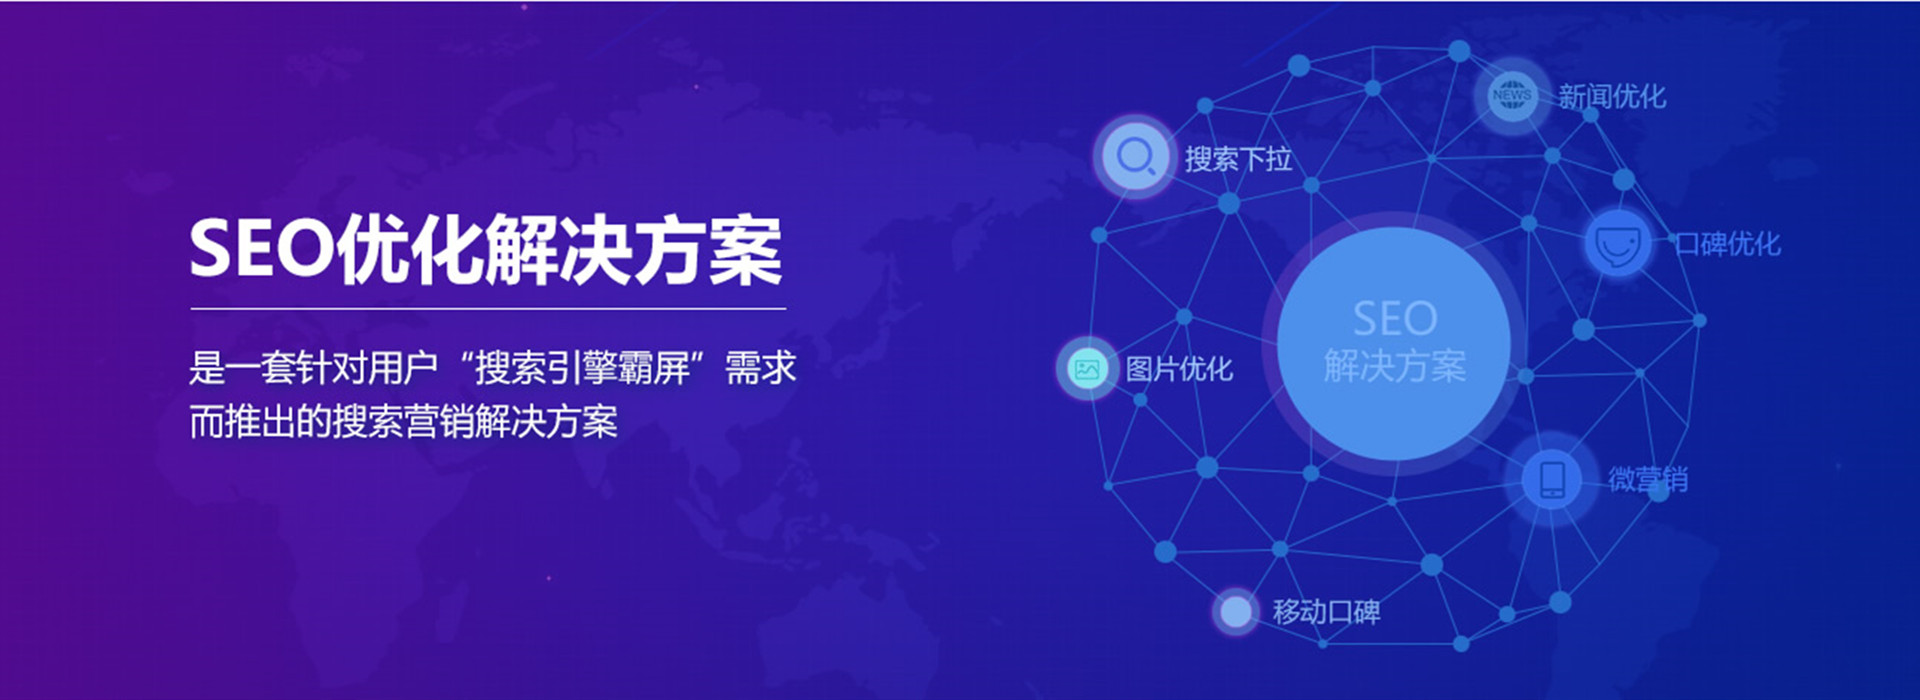 上海网络营销:网络营销生态系统?